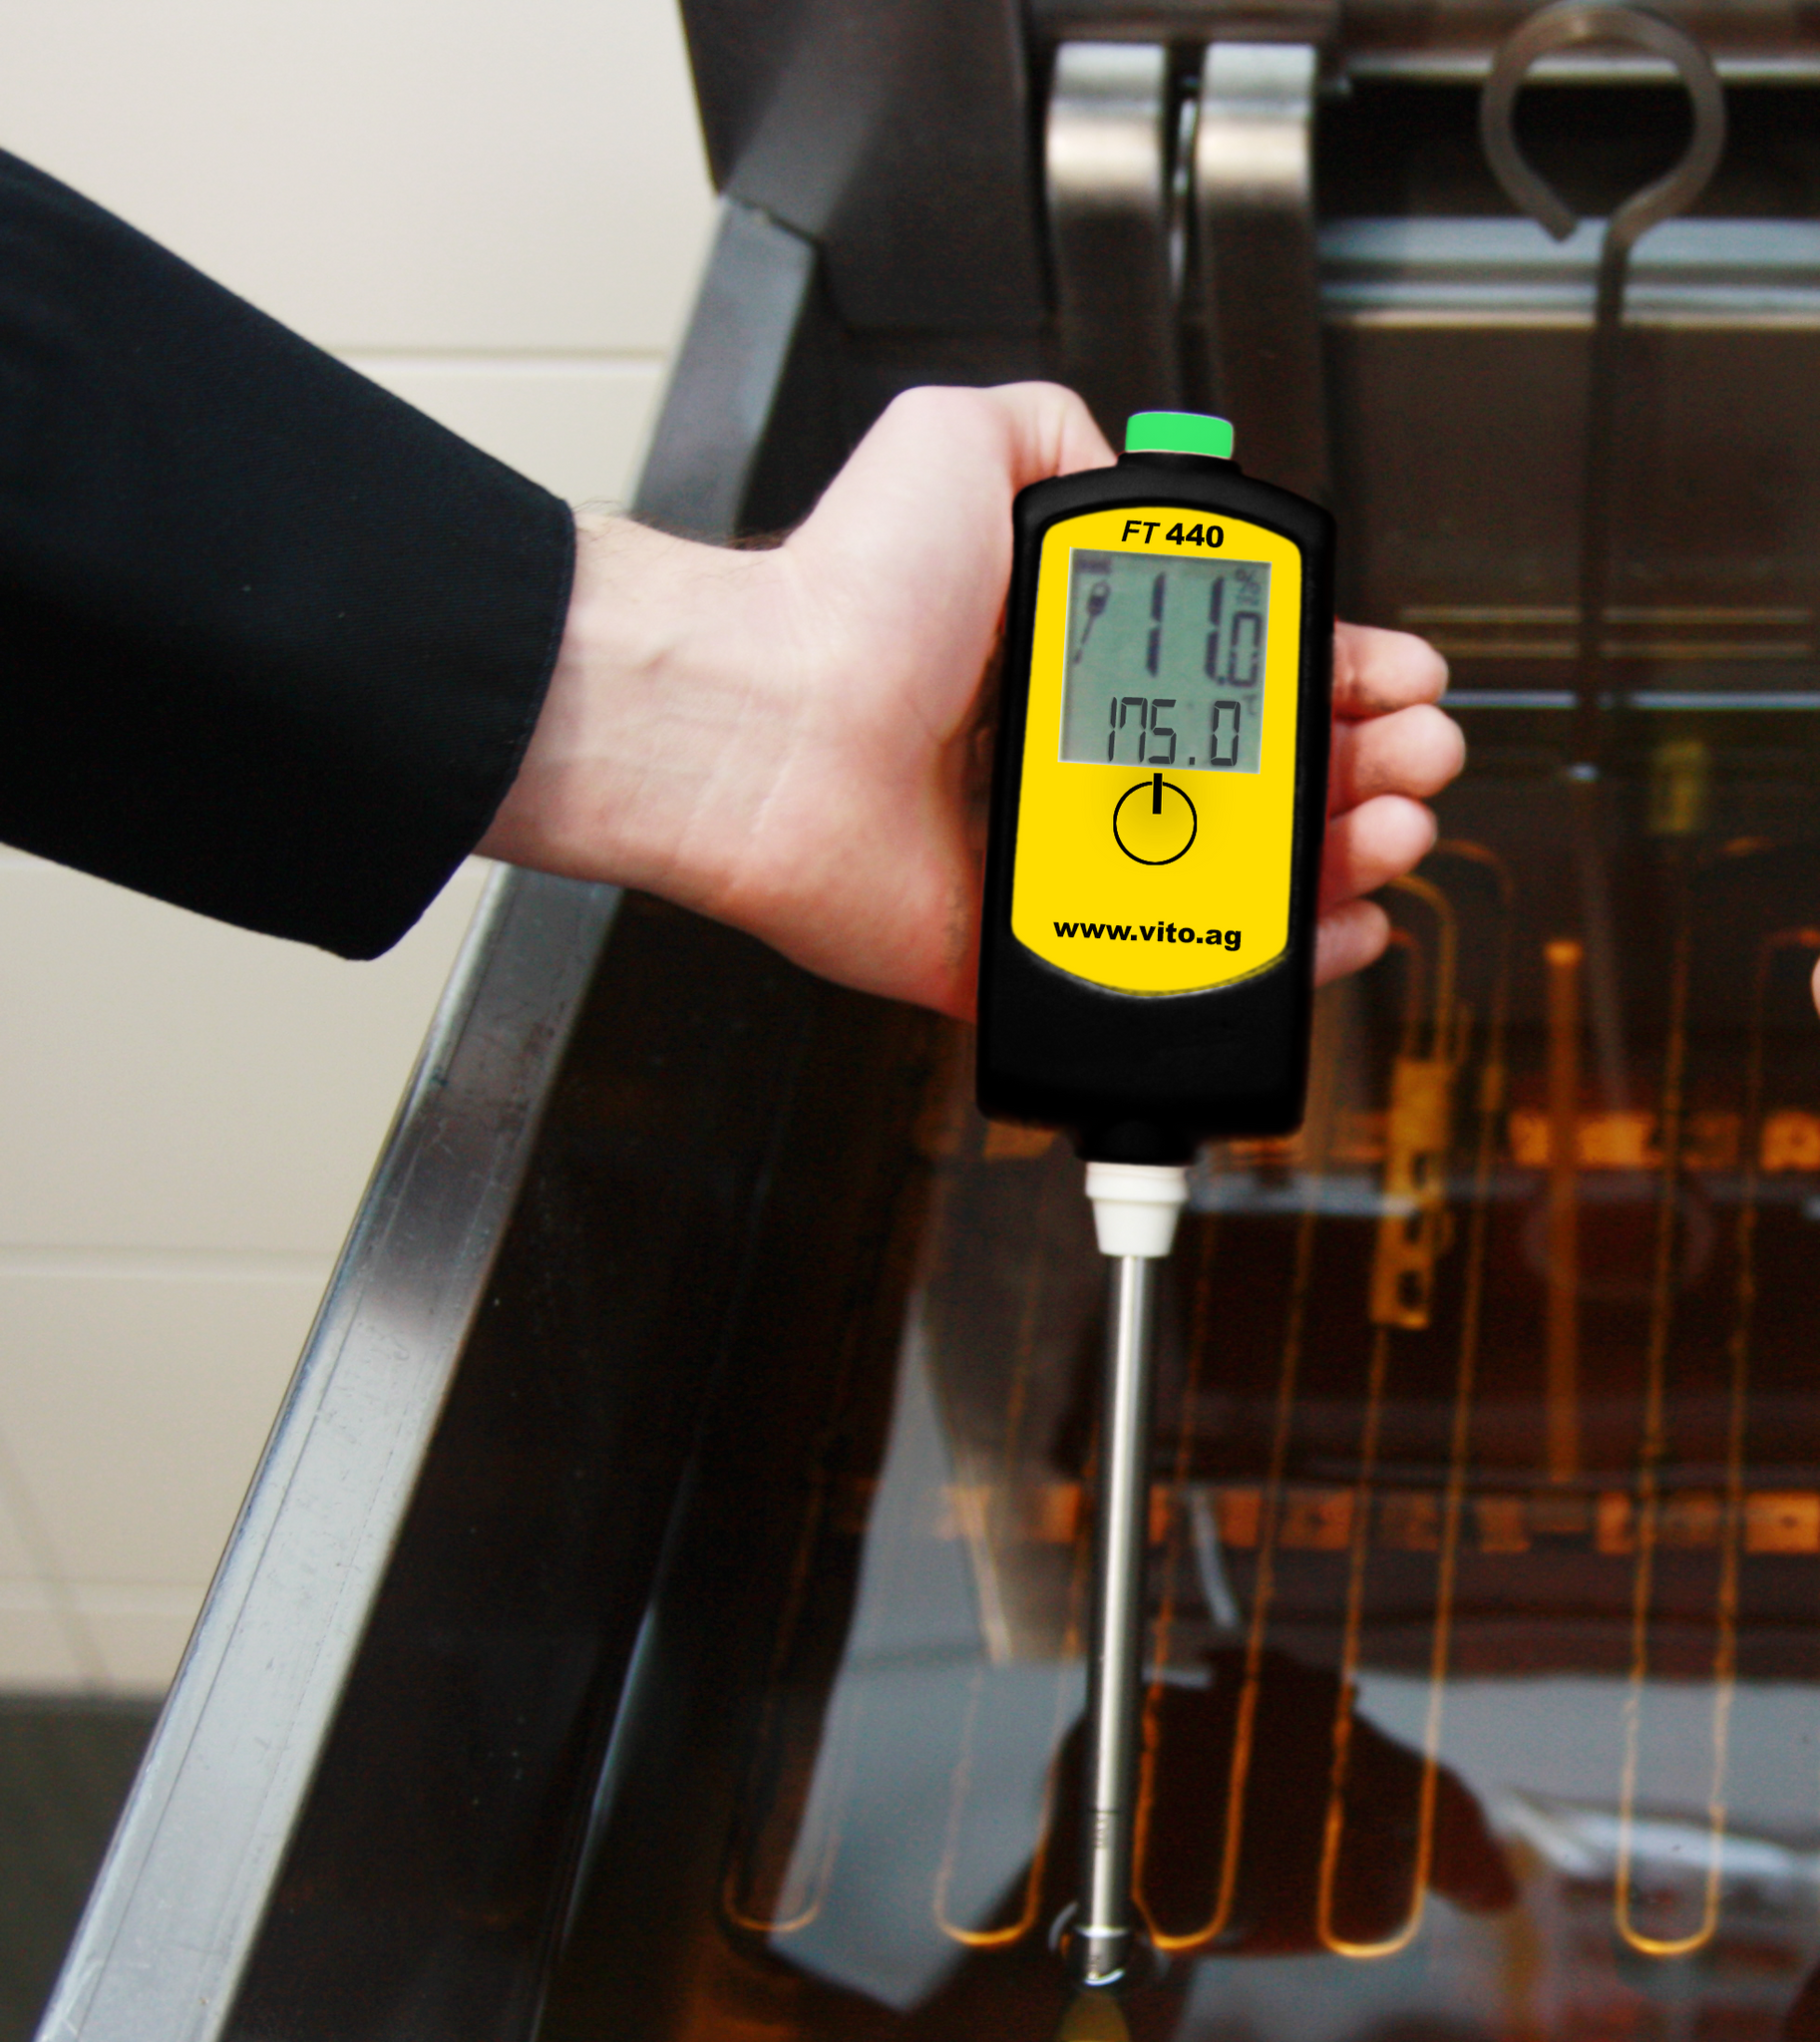 FT 440 - Tester per la qualità olio di frittura – VITO Italia Online Shop